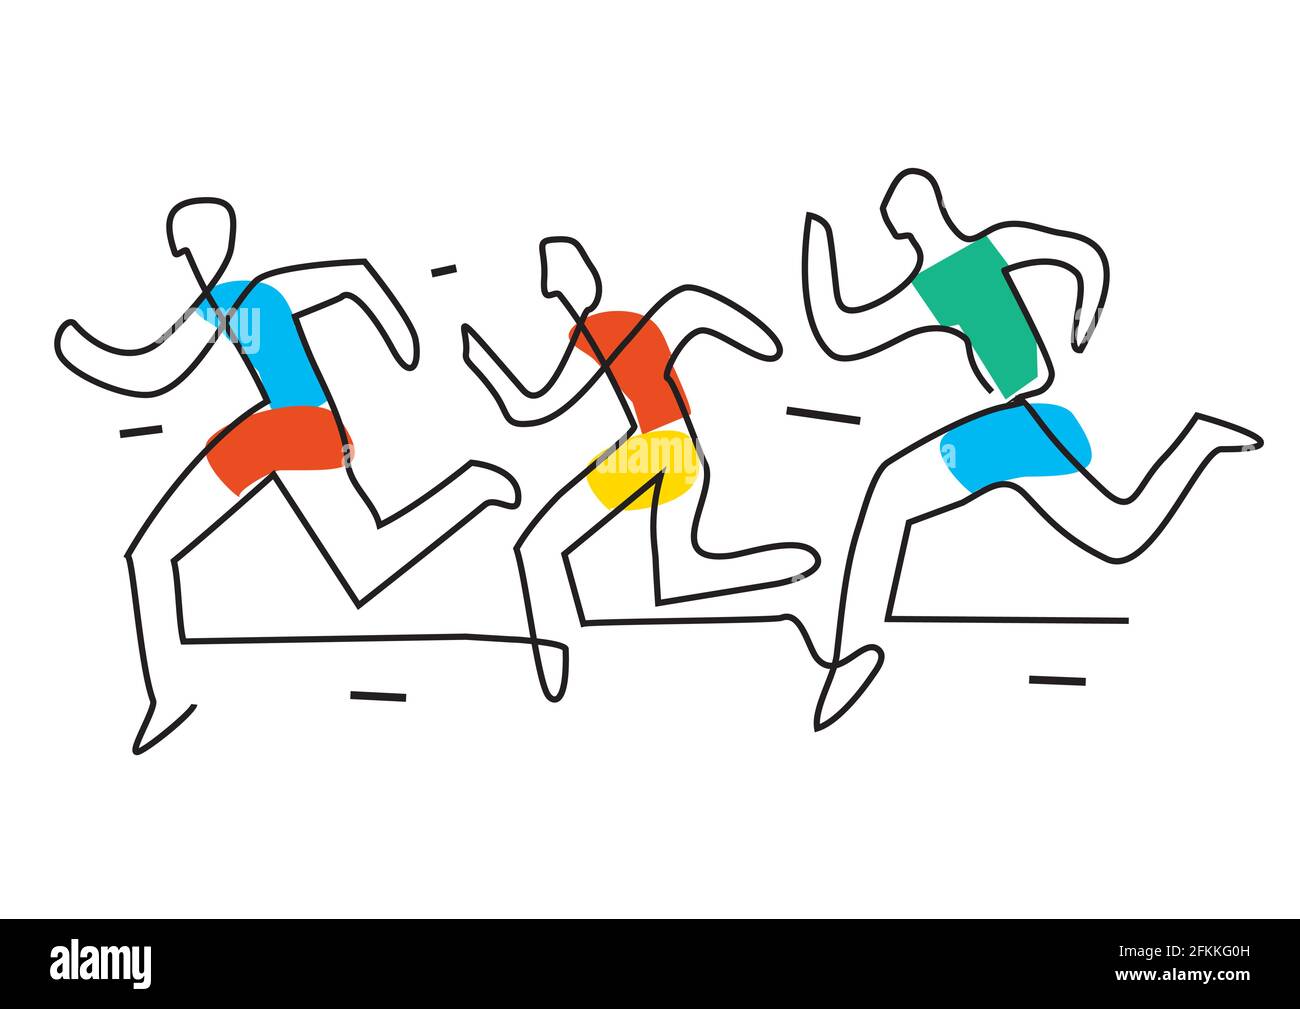 Joggen, Rennen Rennen Karikatur. Illustration von drei lustigen Läufern mit durchgehender Linienzeichnung. Vektor verfügbar. Stock Vektor